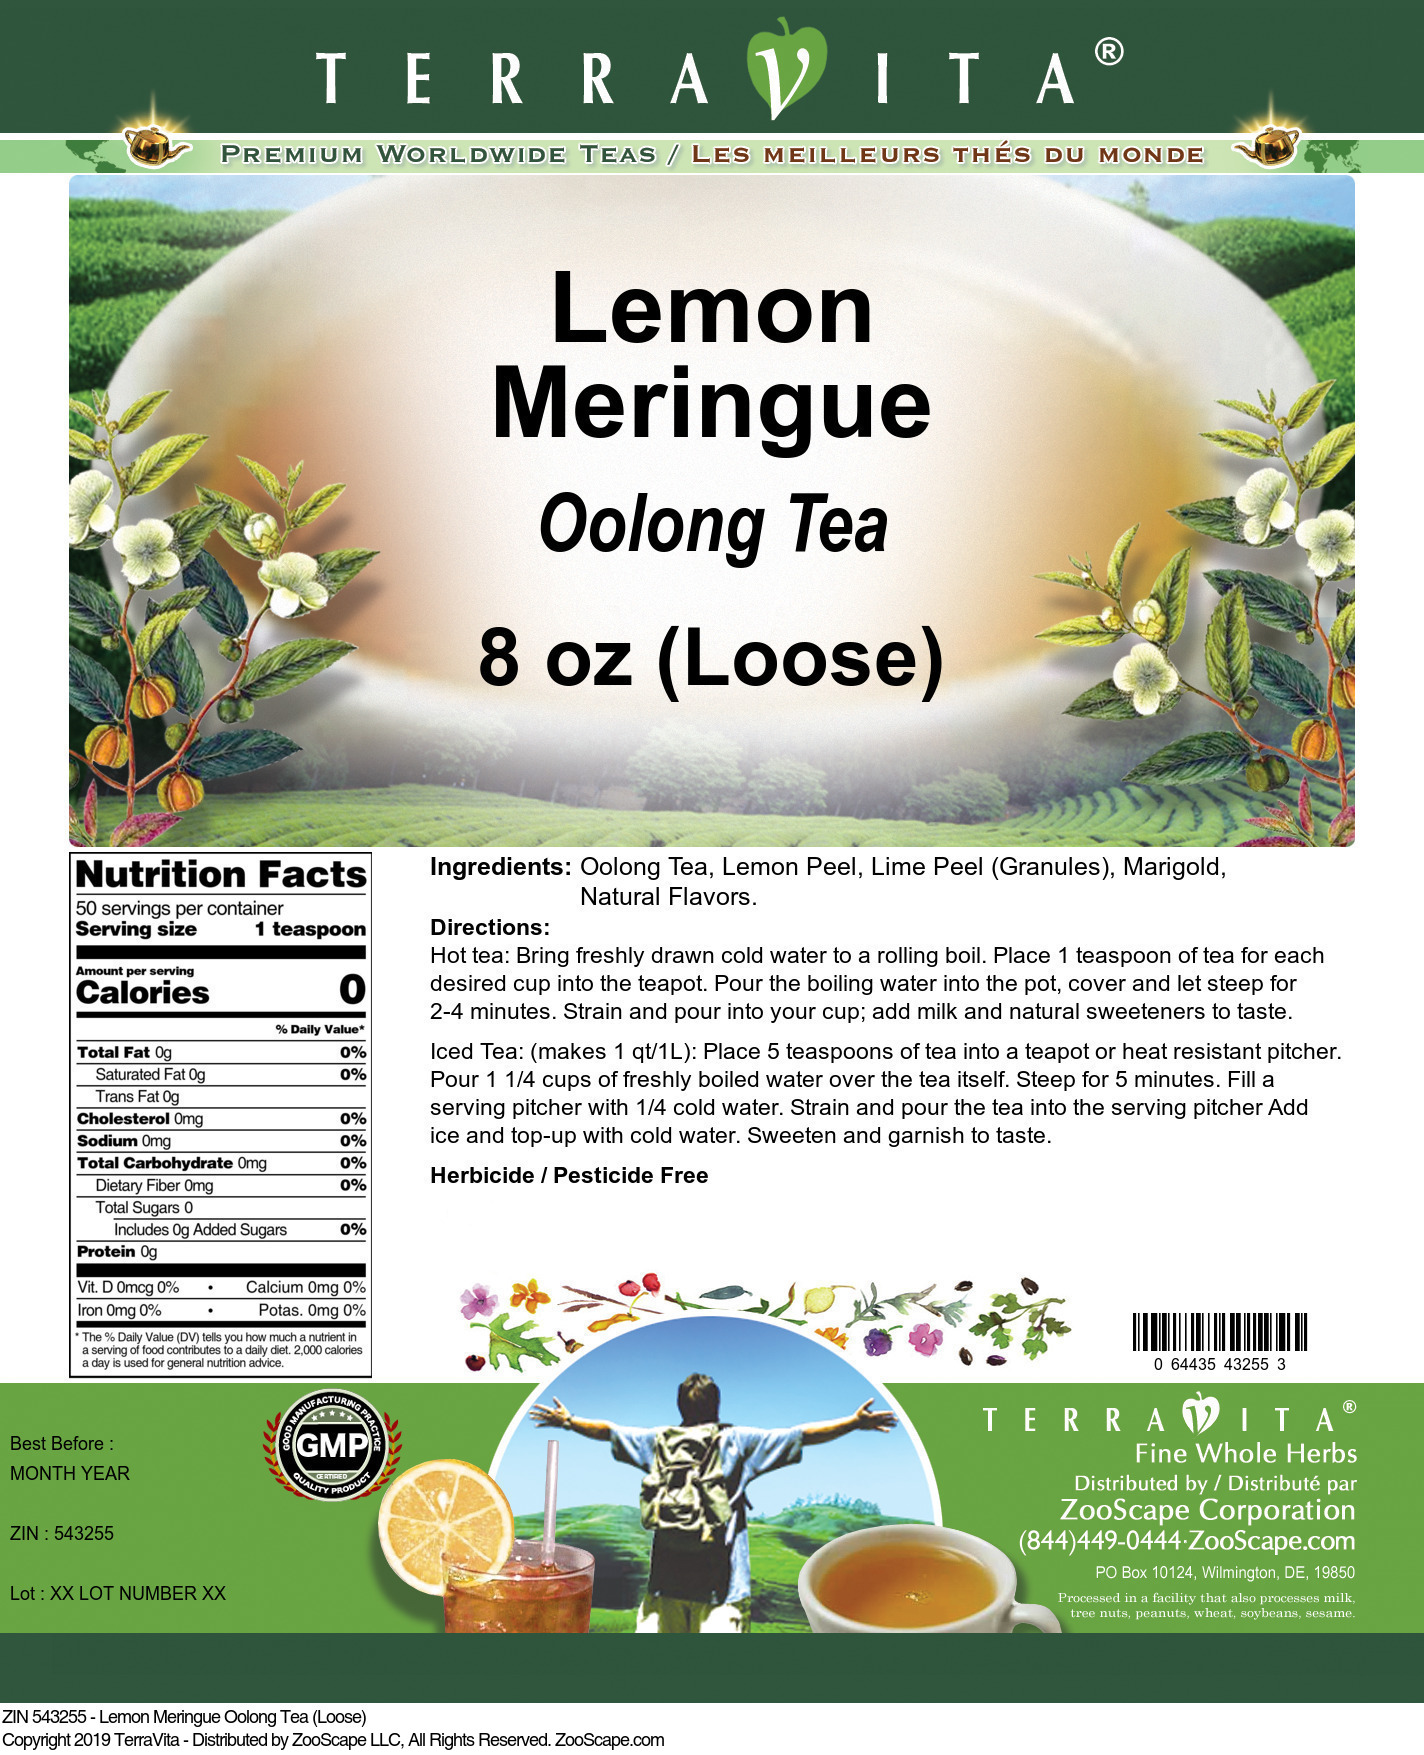 Lemon Meringue Oolong Tea (Loose) - Label